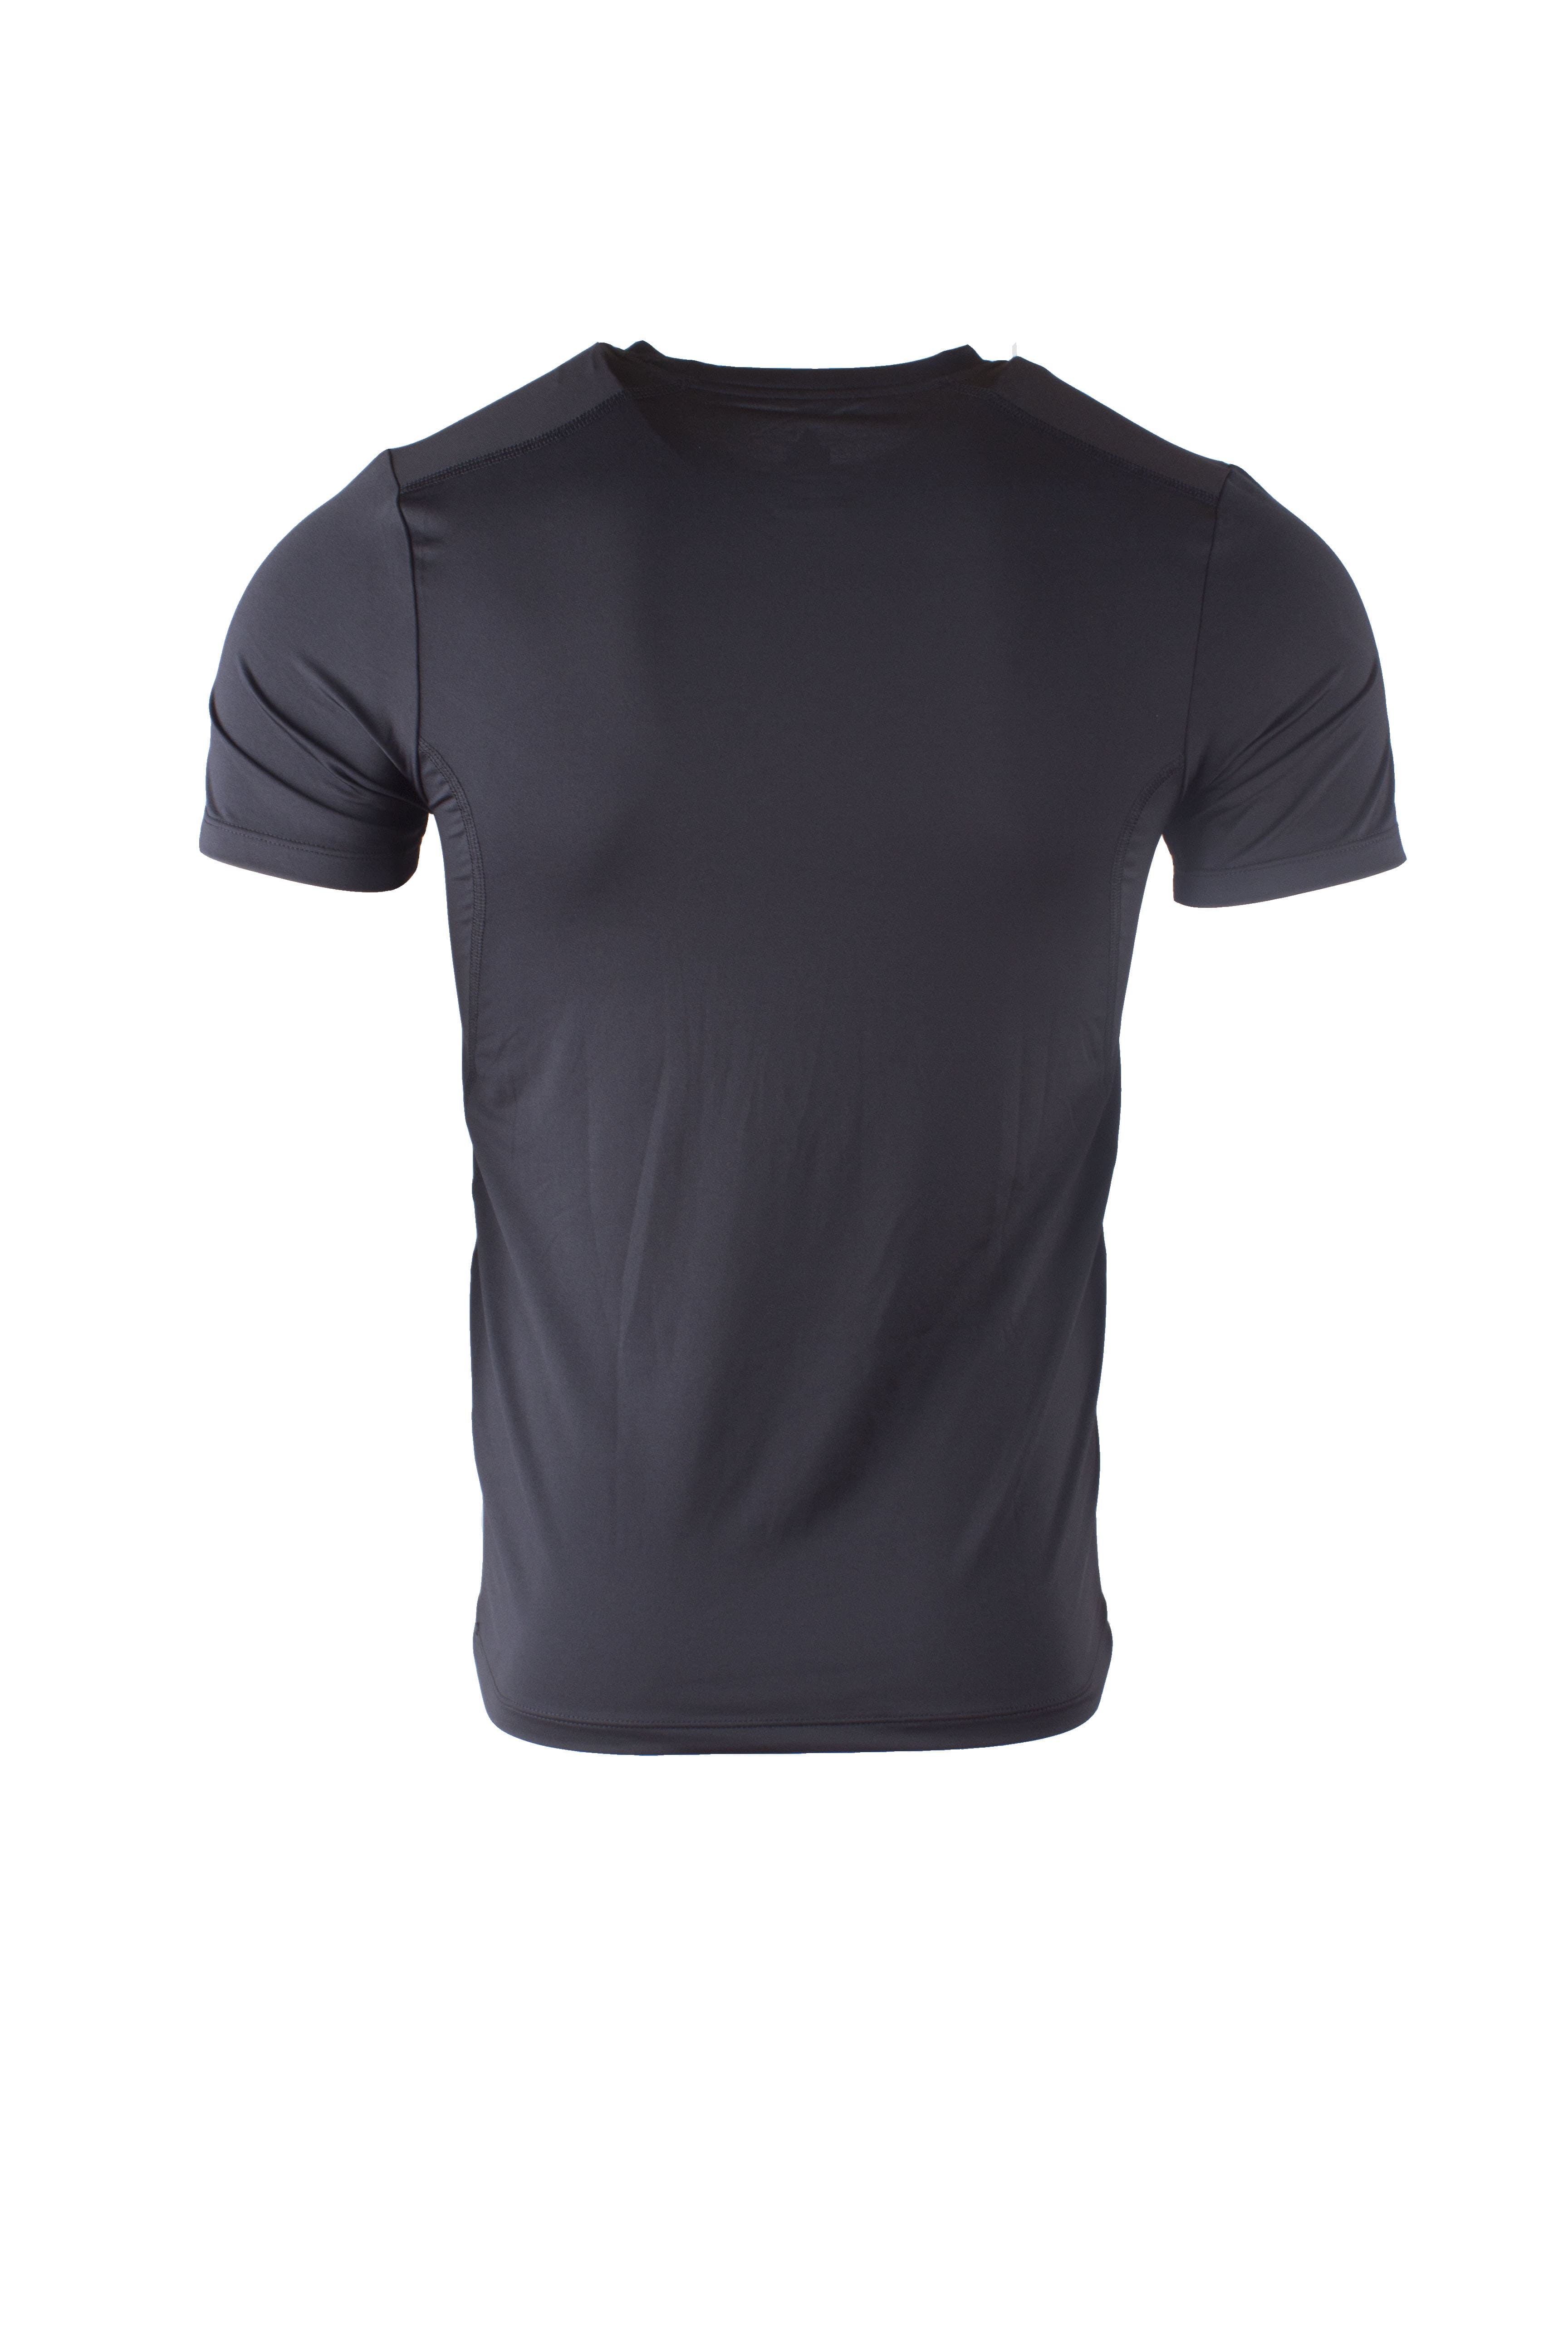 Спортивная футболка PEAK (FW63241, Black)